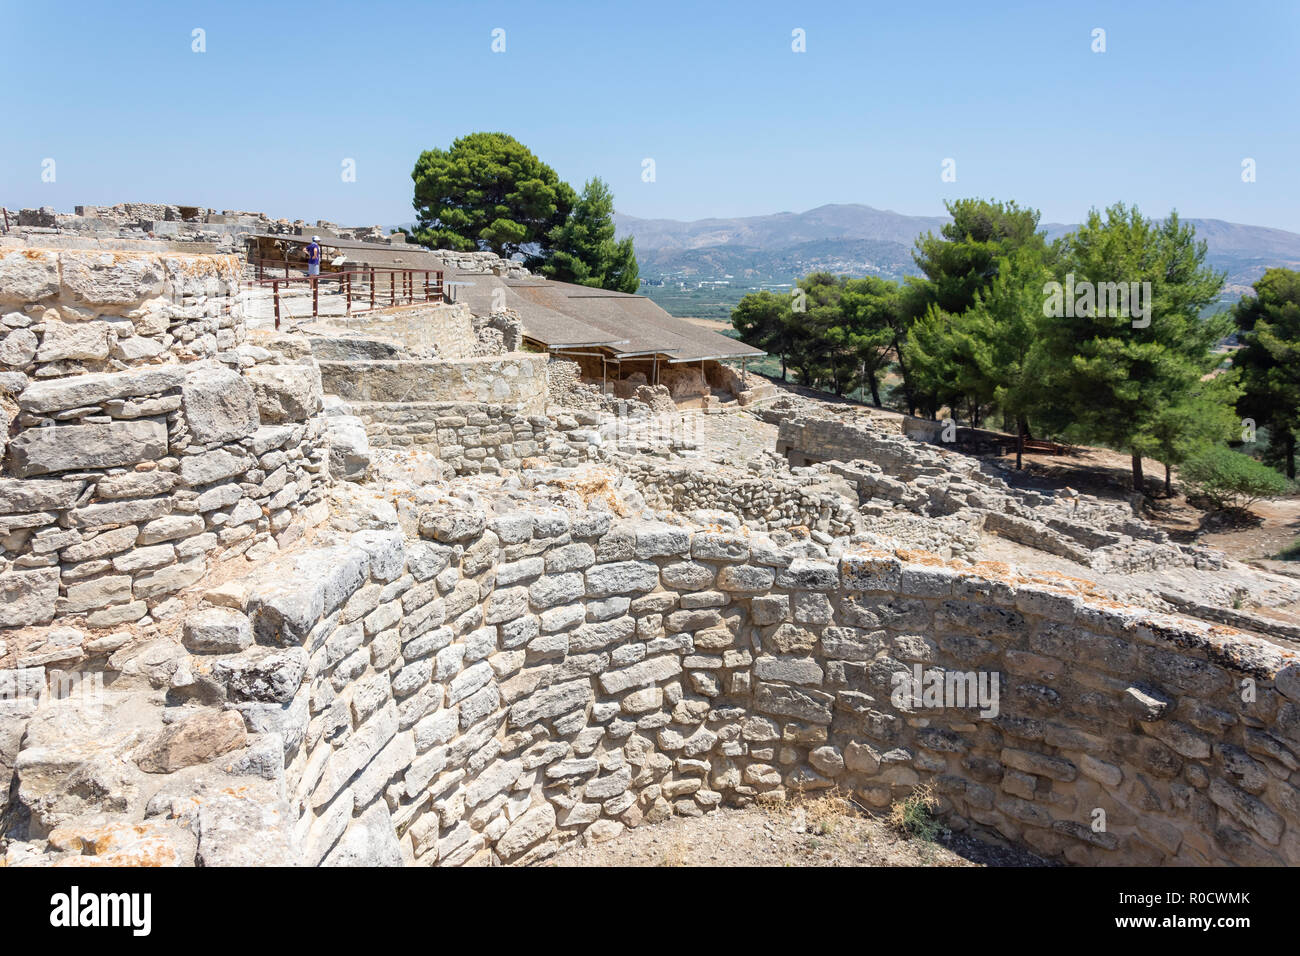 Die Kouloures, Phaistos (Phaestus) Bronzezeit archäologische Stätte, Festos, Irakleio Region, Kreta (Kriti), Griechenland Stockfoto